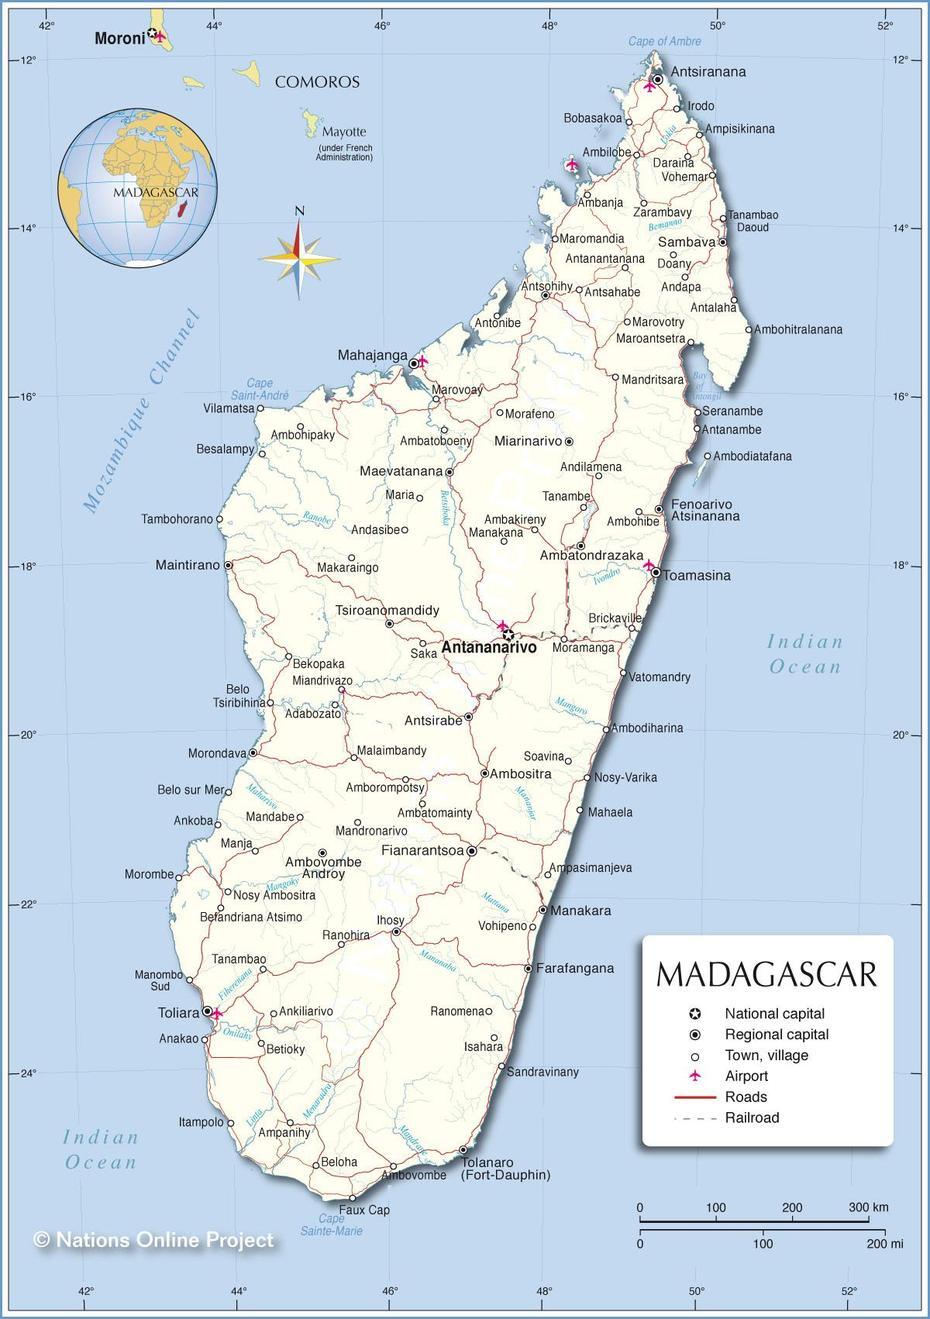 Madagascar Country, Madagascar Climate, Nations Online, Maromandia, Madagascar